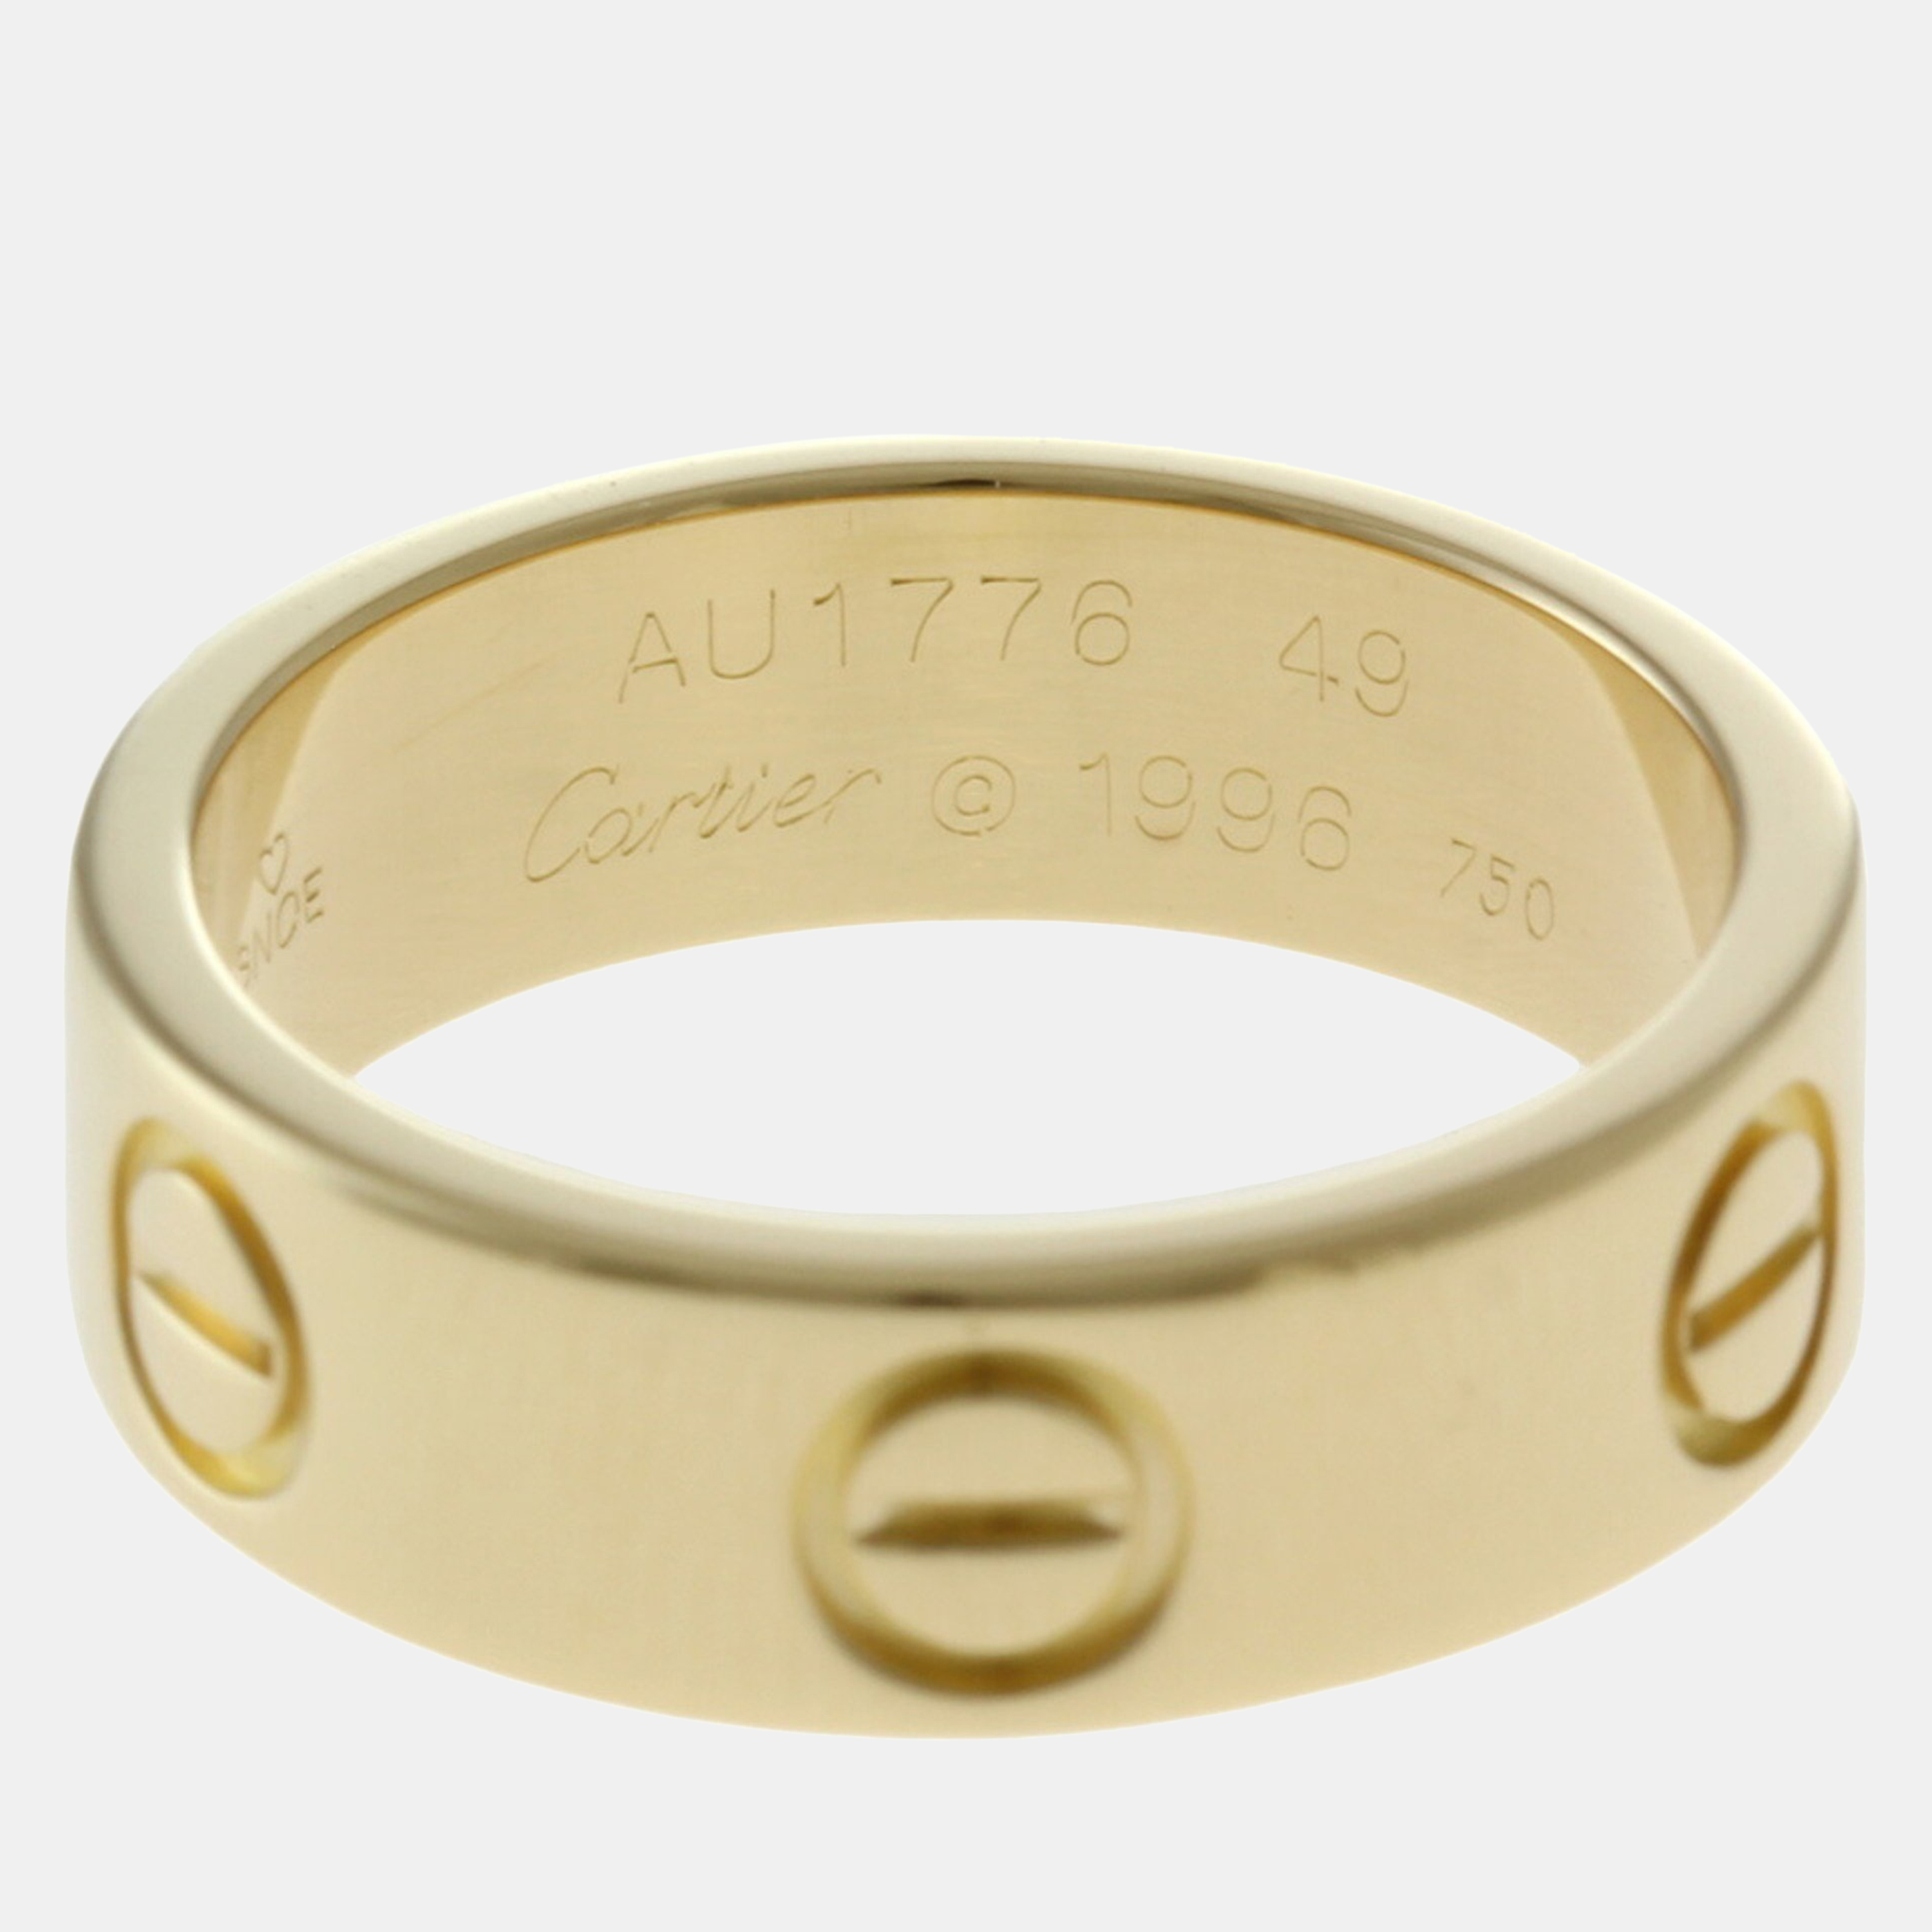 Cartier 18K Yellow Gold Love Band Ring EU 49